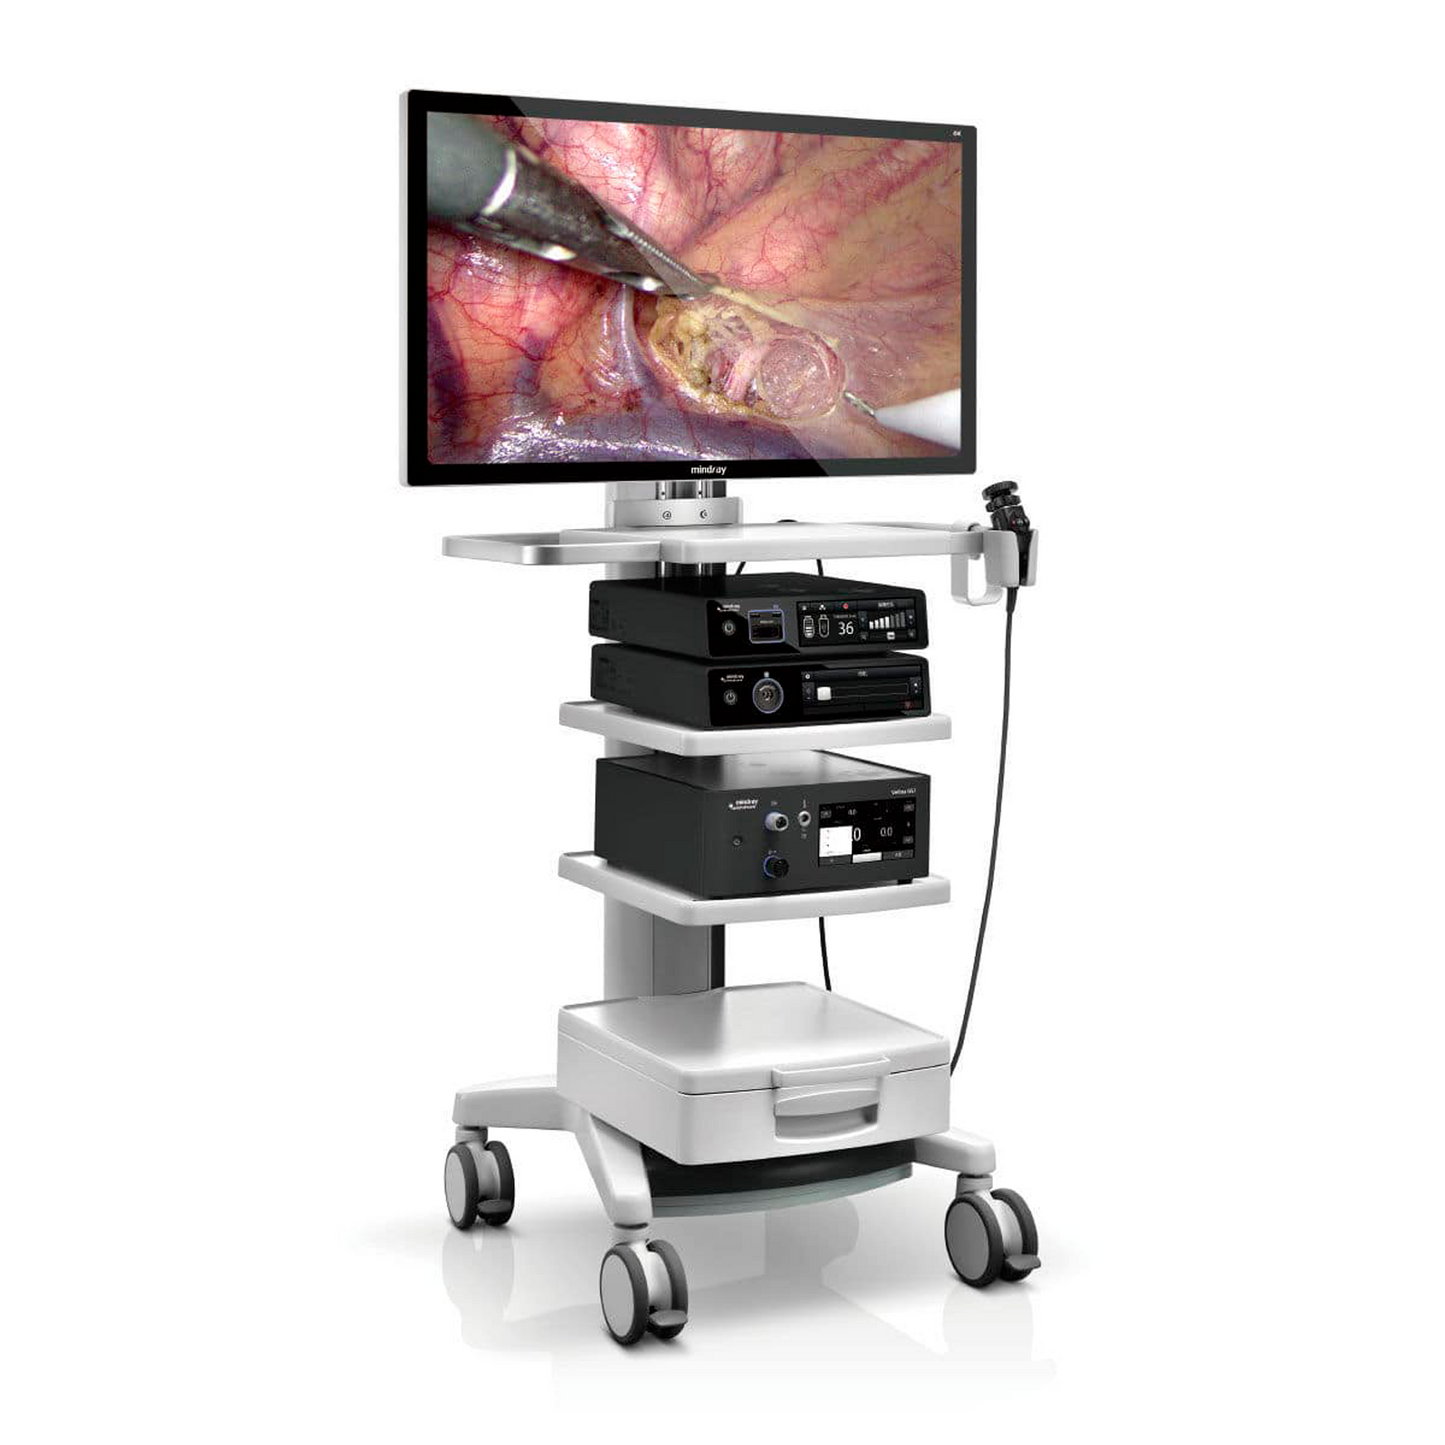 equipo de endoscopio estacionario de excelente calidad de sus imágenes, que proyecta los tejidos y órganos en color real. 